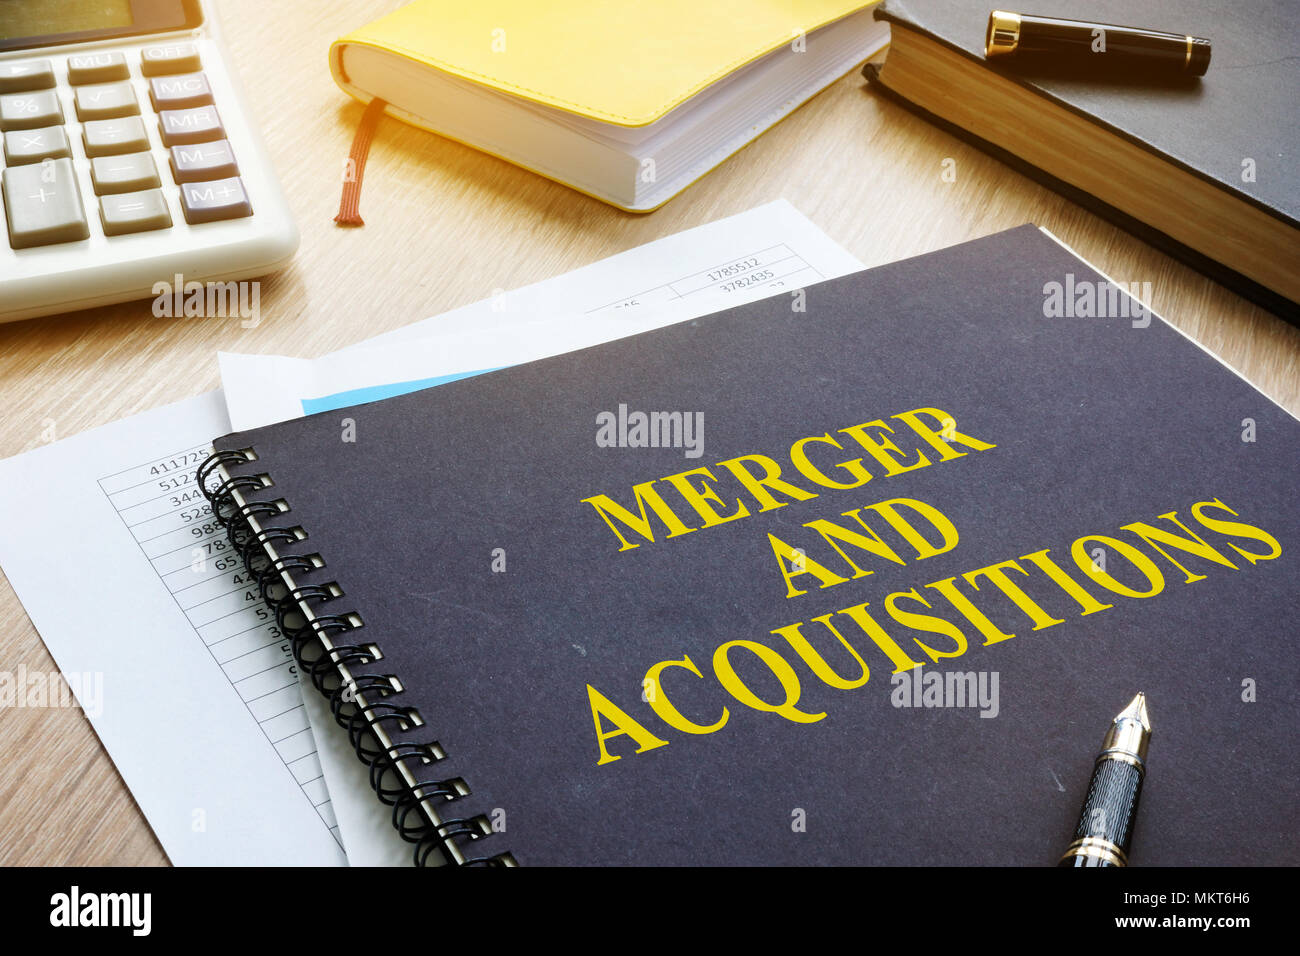 Libro sobre fusiones y adquisiciones M&A en un escritorio. Foto de stock